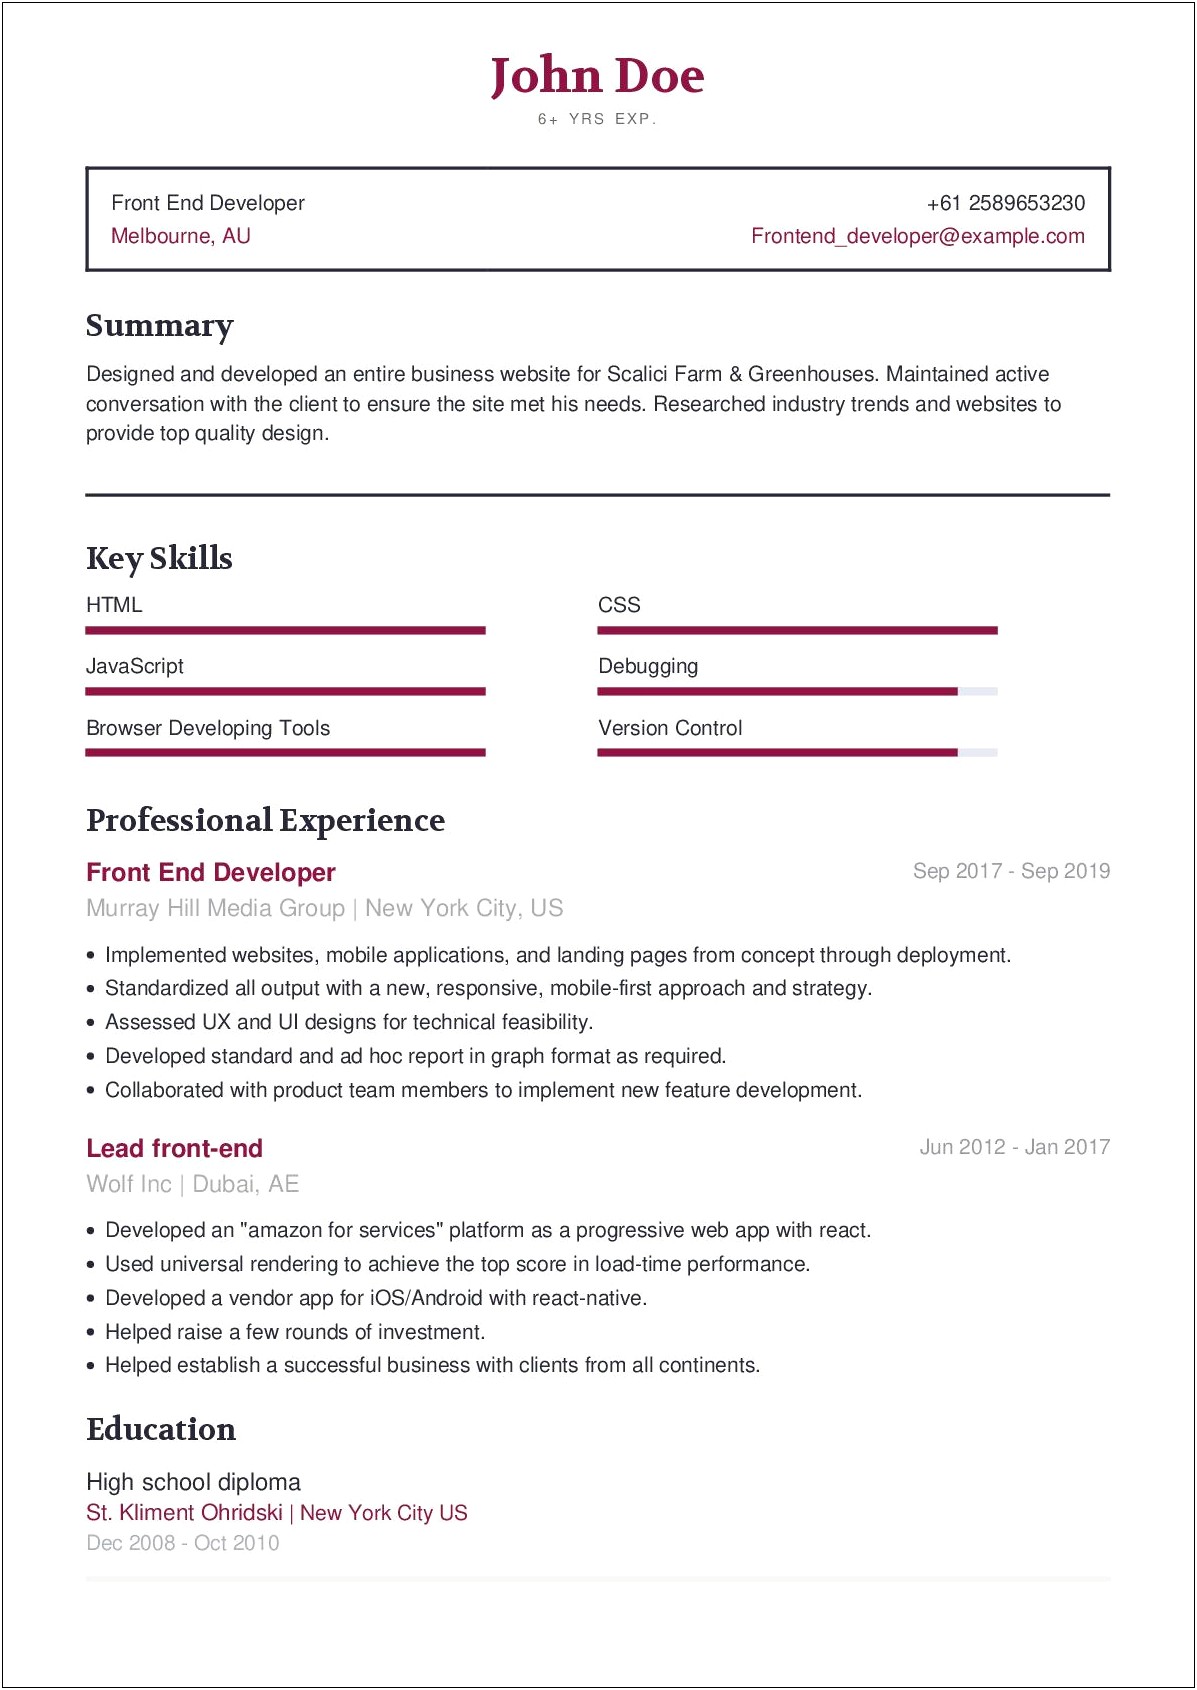 Resume Sample For Front End Developer Or Ui